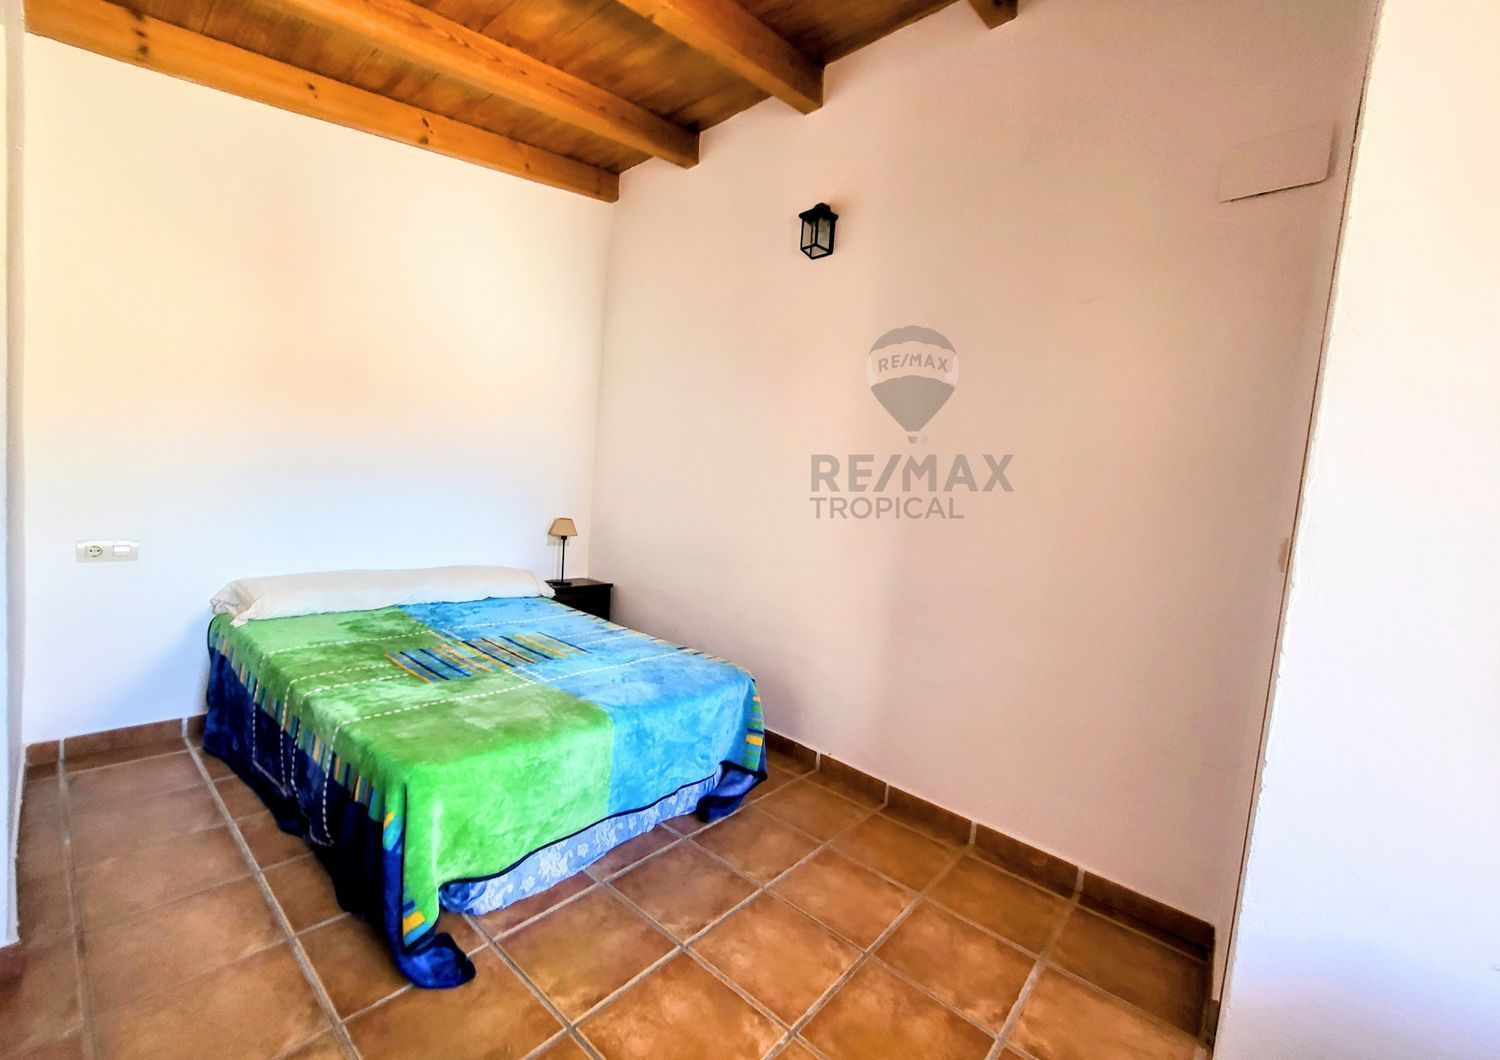 Área de Molvízar, Granada, 3 Bedrooms Bedrooms, 3 Rooms Rooms,2 BathroomsBathrooms,House,For Sale